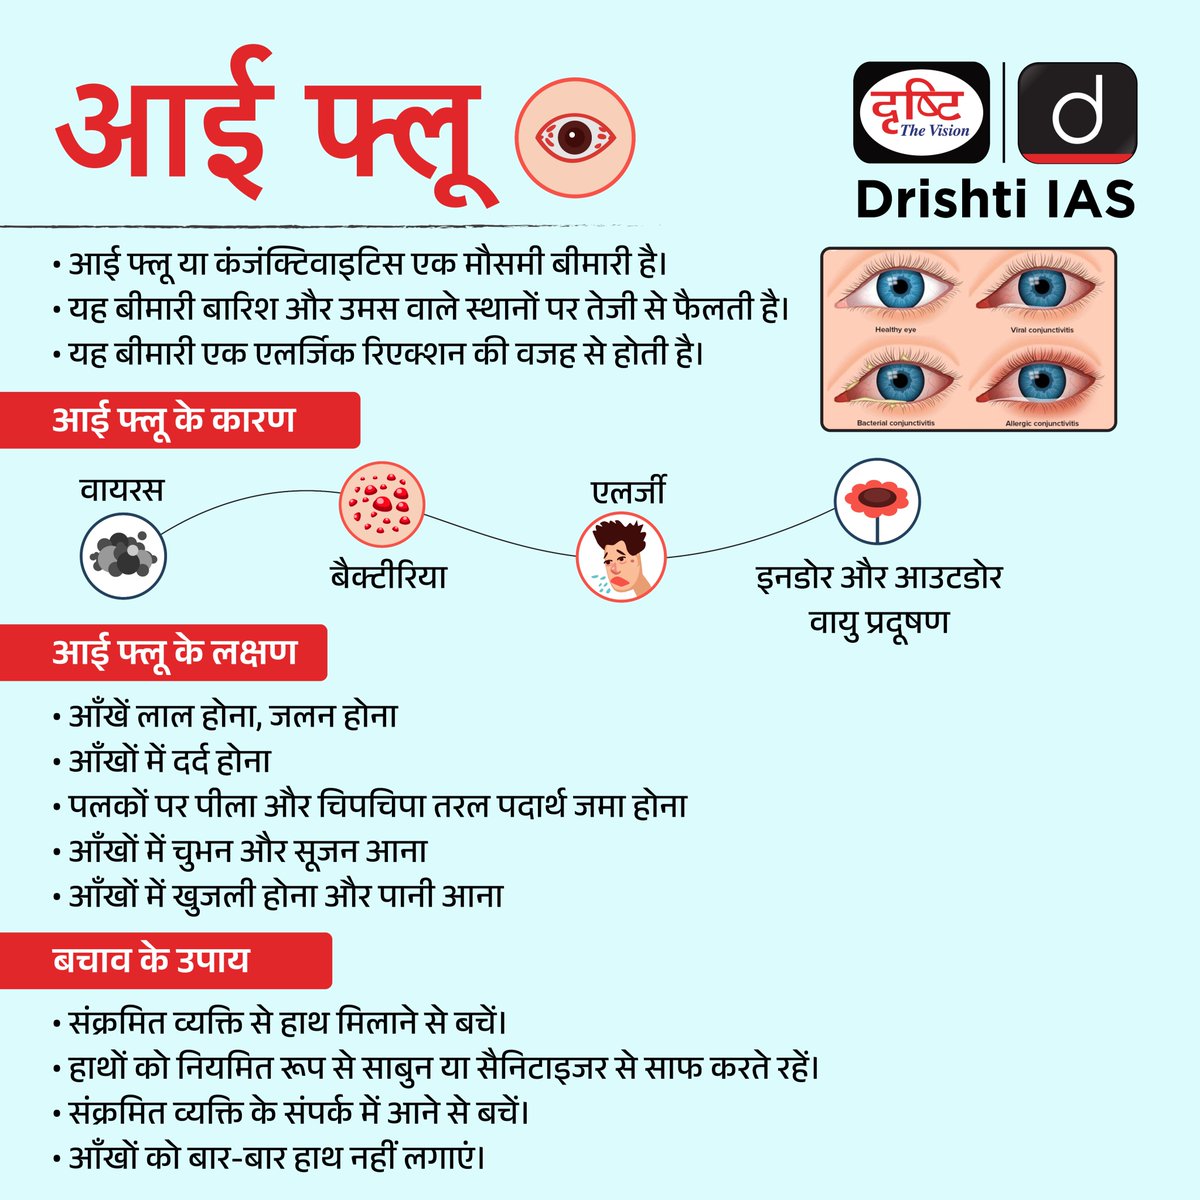 आई फ्लू...
.
#Eyeflu #conjunctivitis #seasonaldisease #allergicreaction #infographics #DrishtiInfographics #DrishtiIAS #DrishtiPCS #PCS #IAS #UPSC